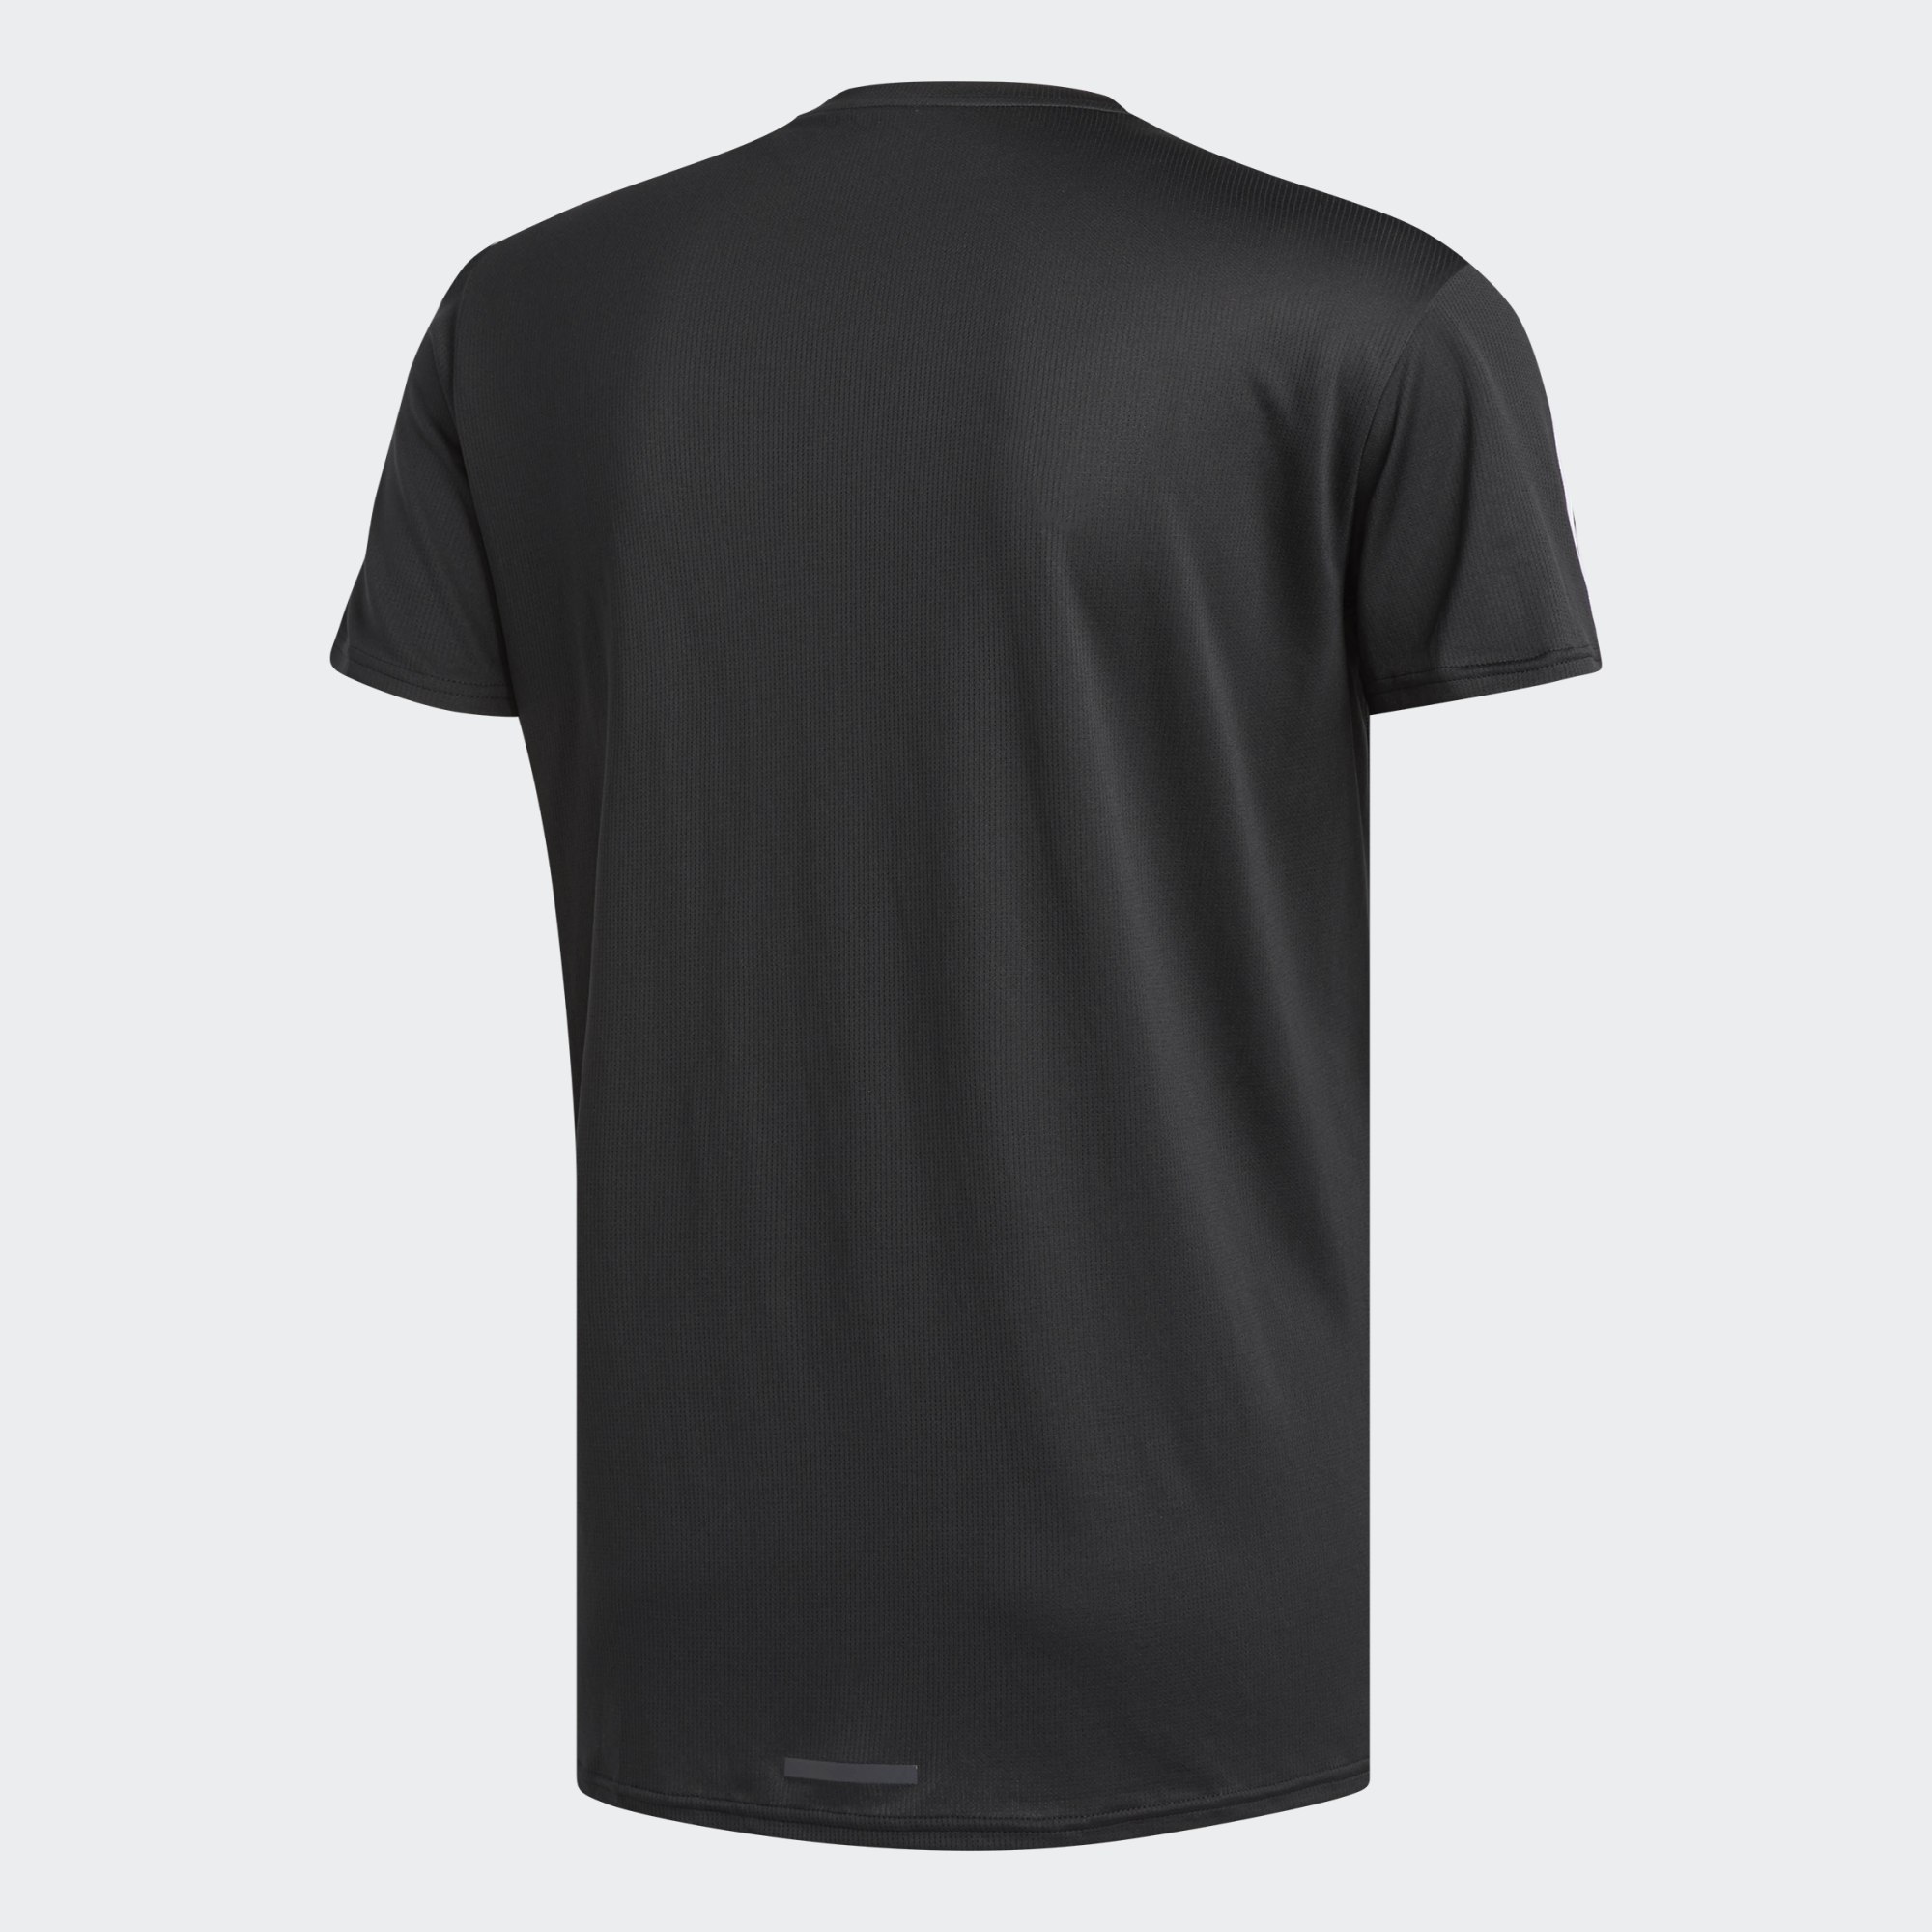 Adidas RUNNING 3-Streifen T-Shirt - auch Übergrößen